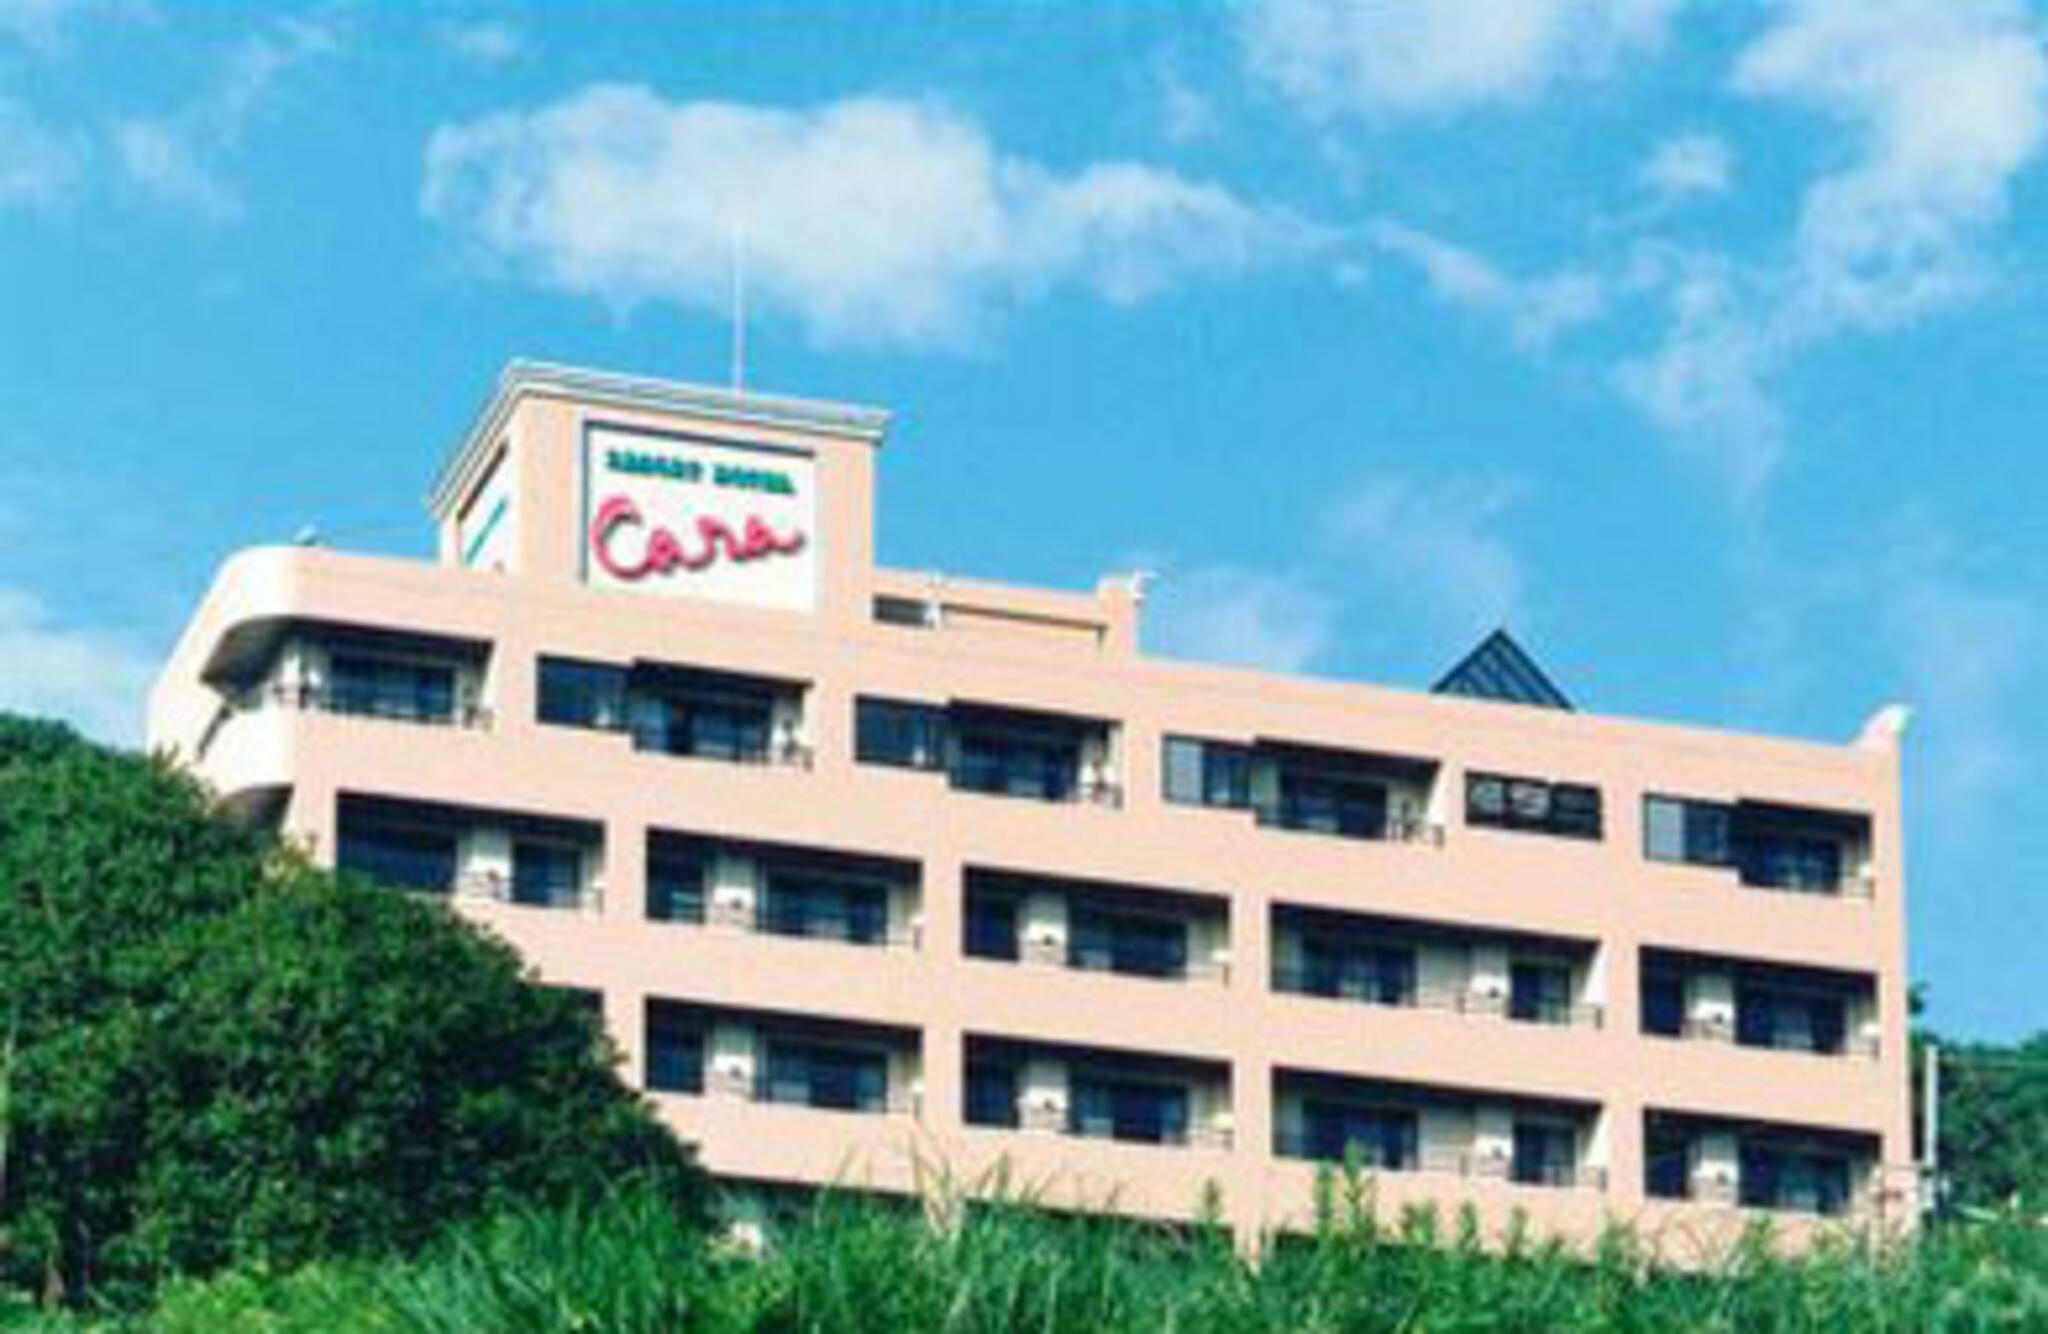 リゾートホテル Caraの代表写真1